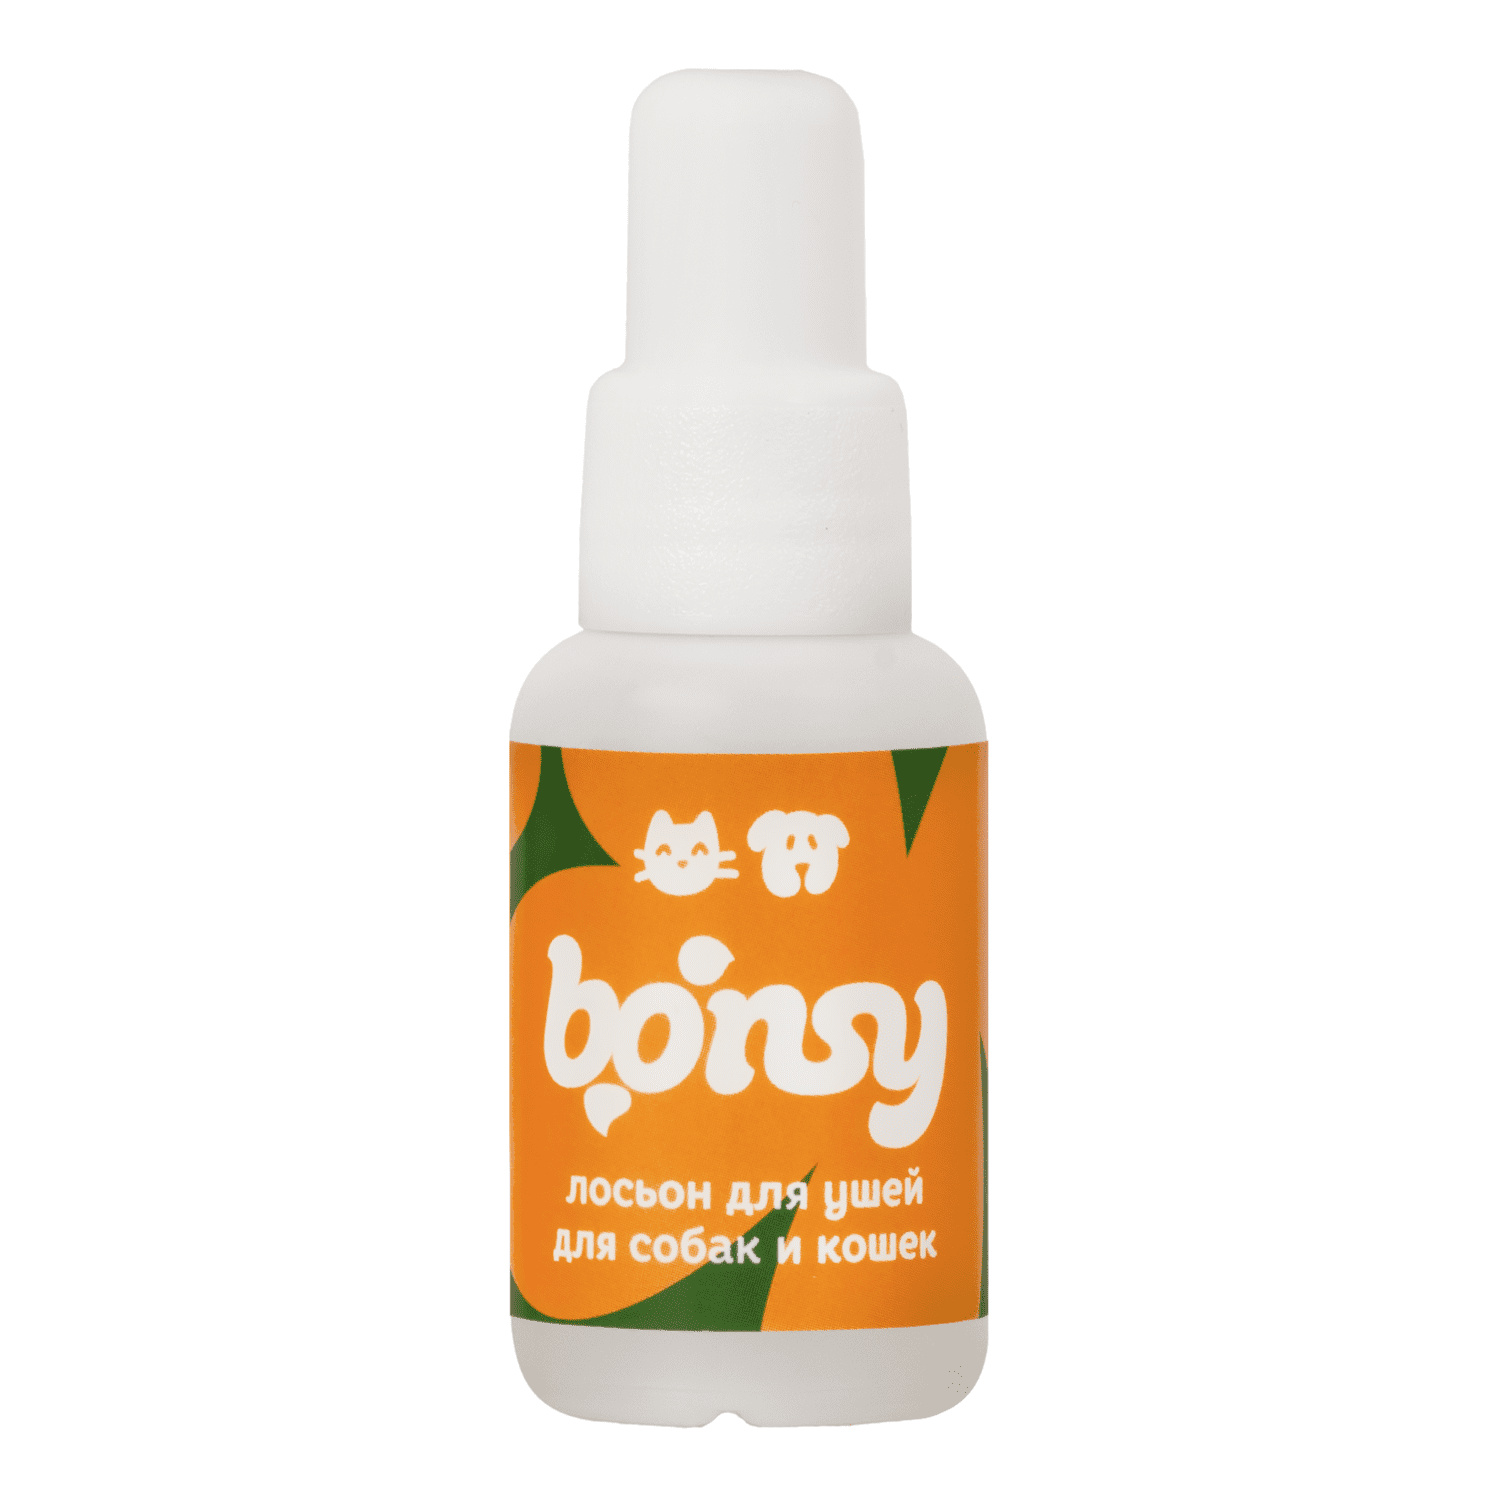 Bonsy Bonsy лосьон для очистки ушей кошек и собак (30 г) bonsy bonsy шампунь с хитозаном для красивой шерсти и здоровой кожи кошек 250 г